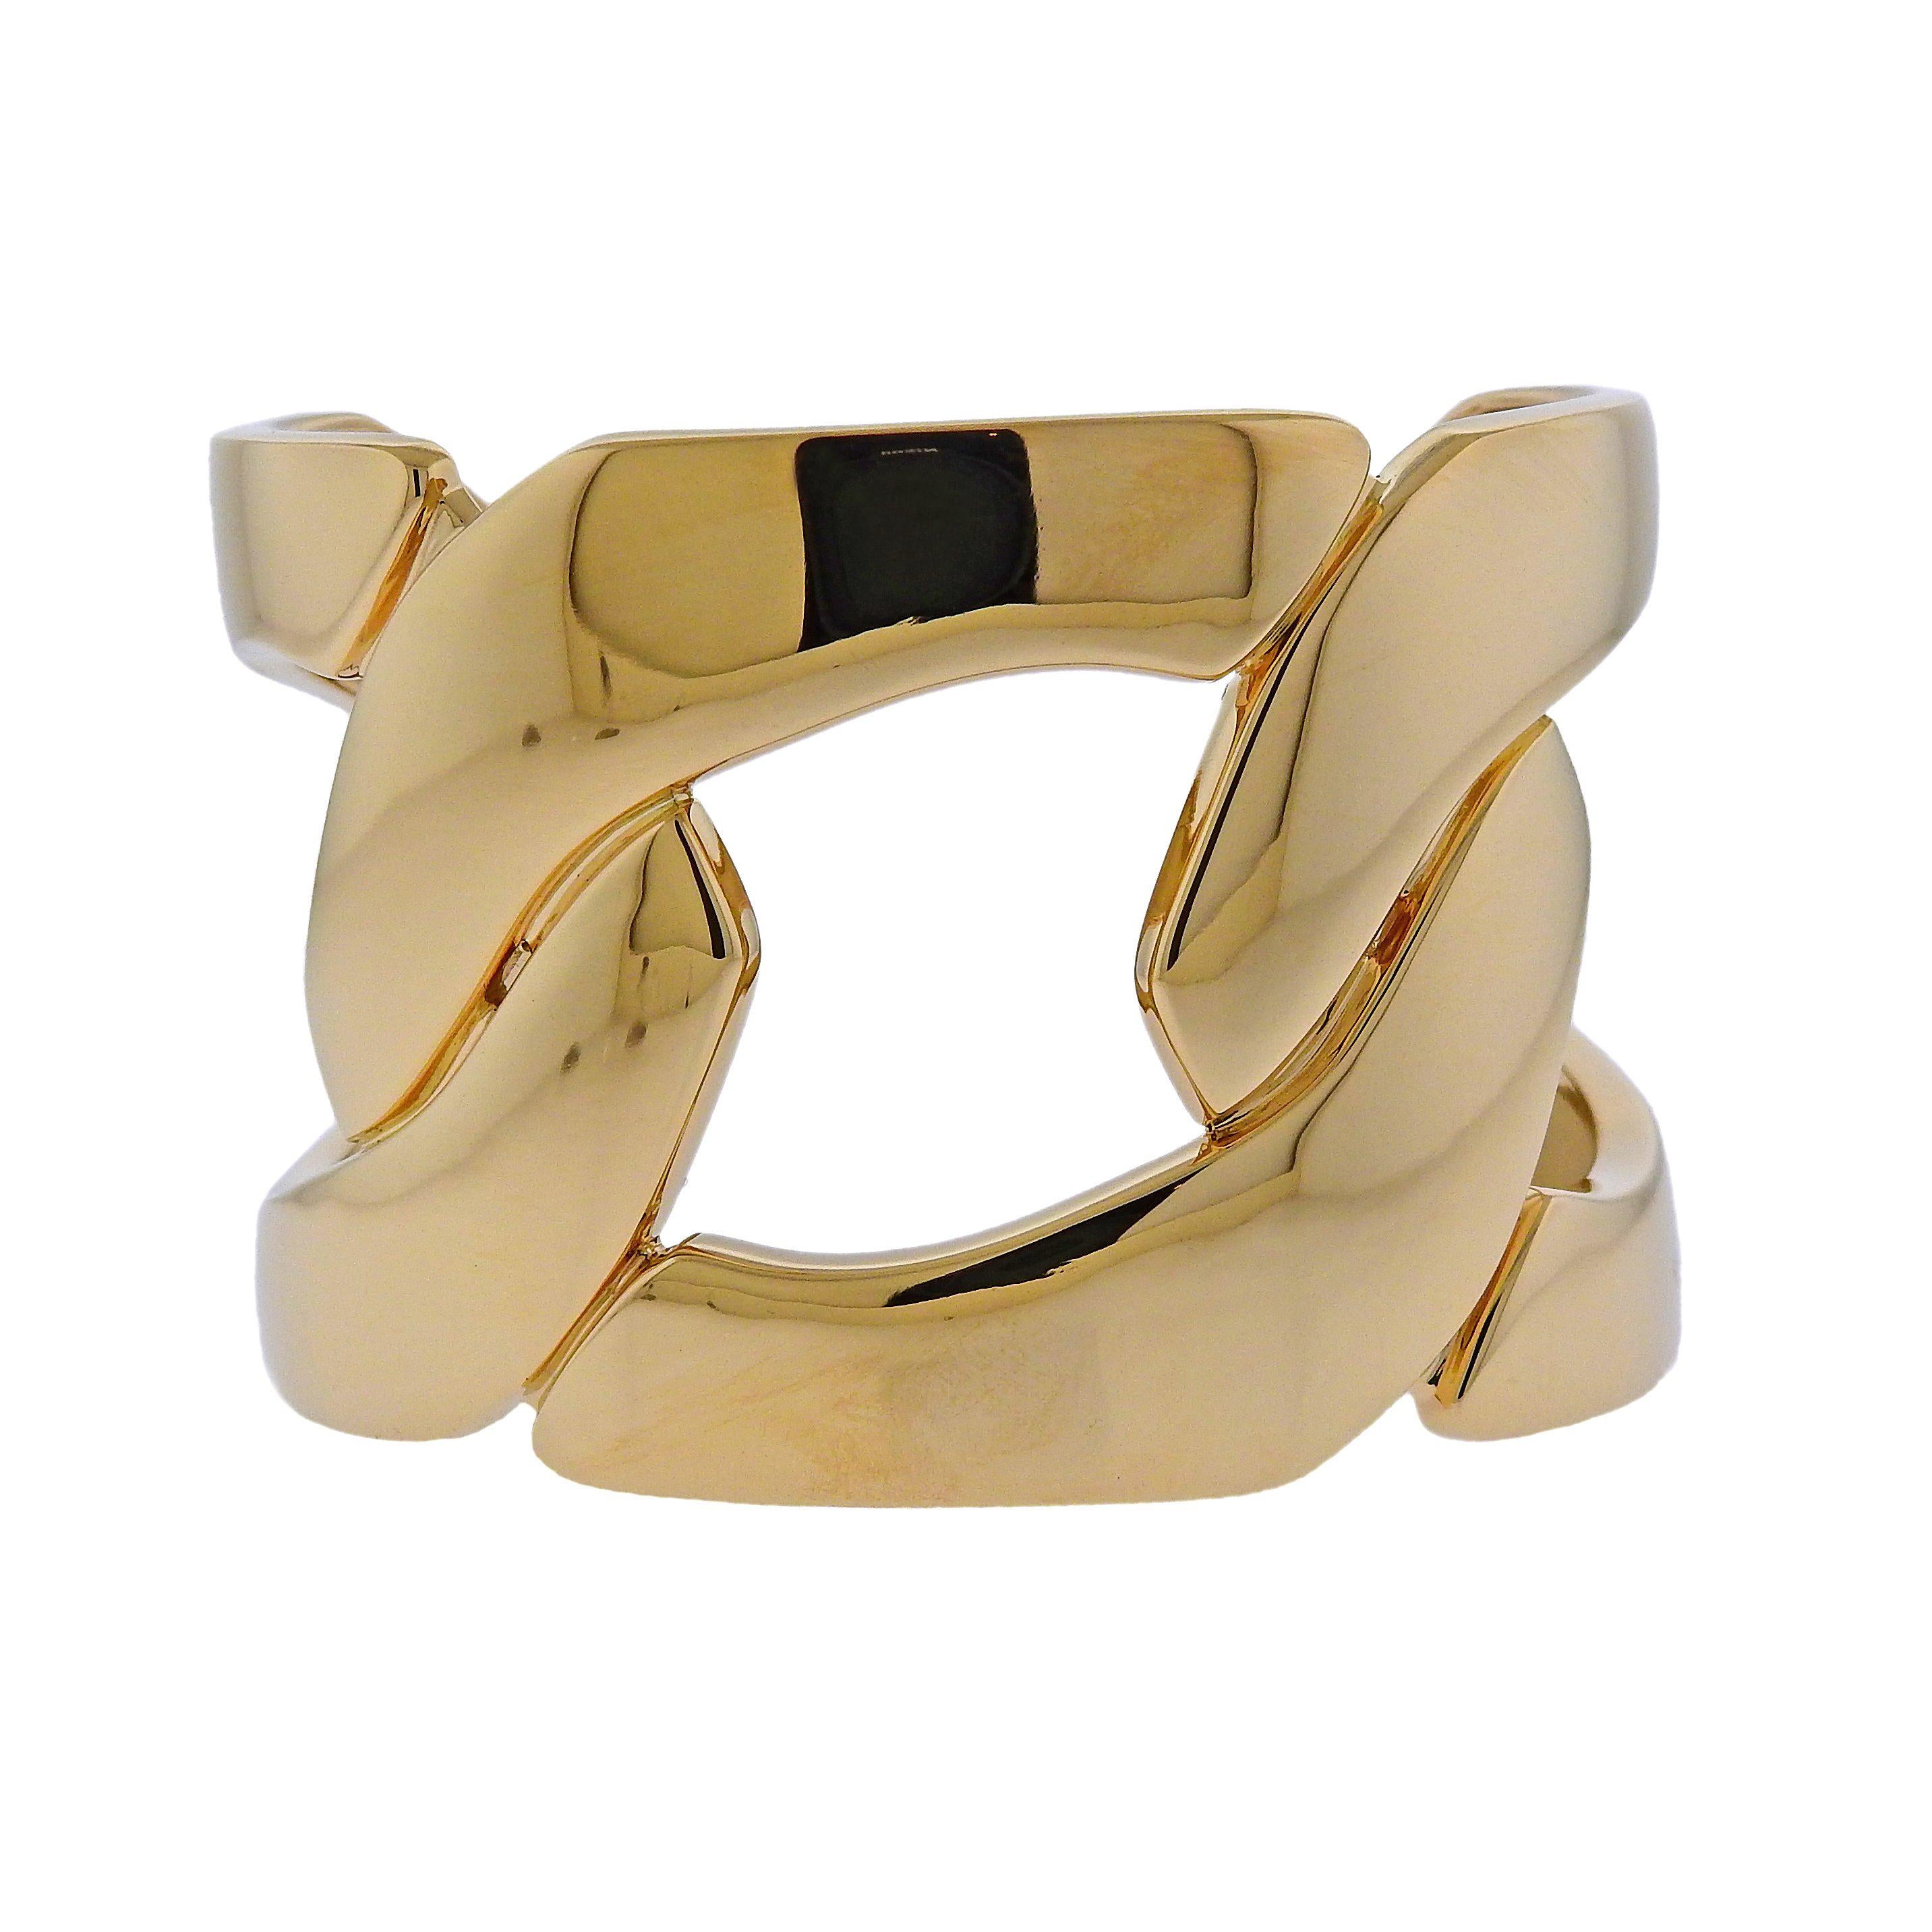 Seaman Schepps Gold Three Links Cuff Bracelet For Sale